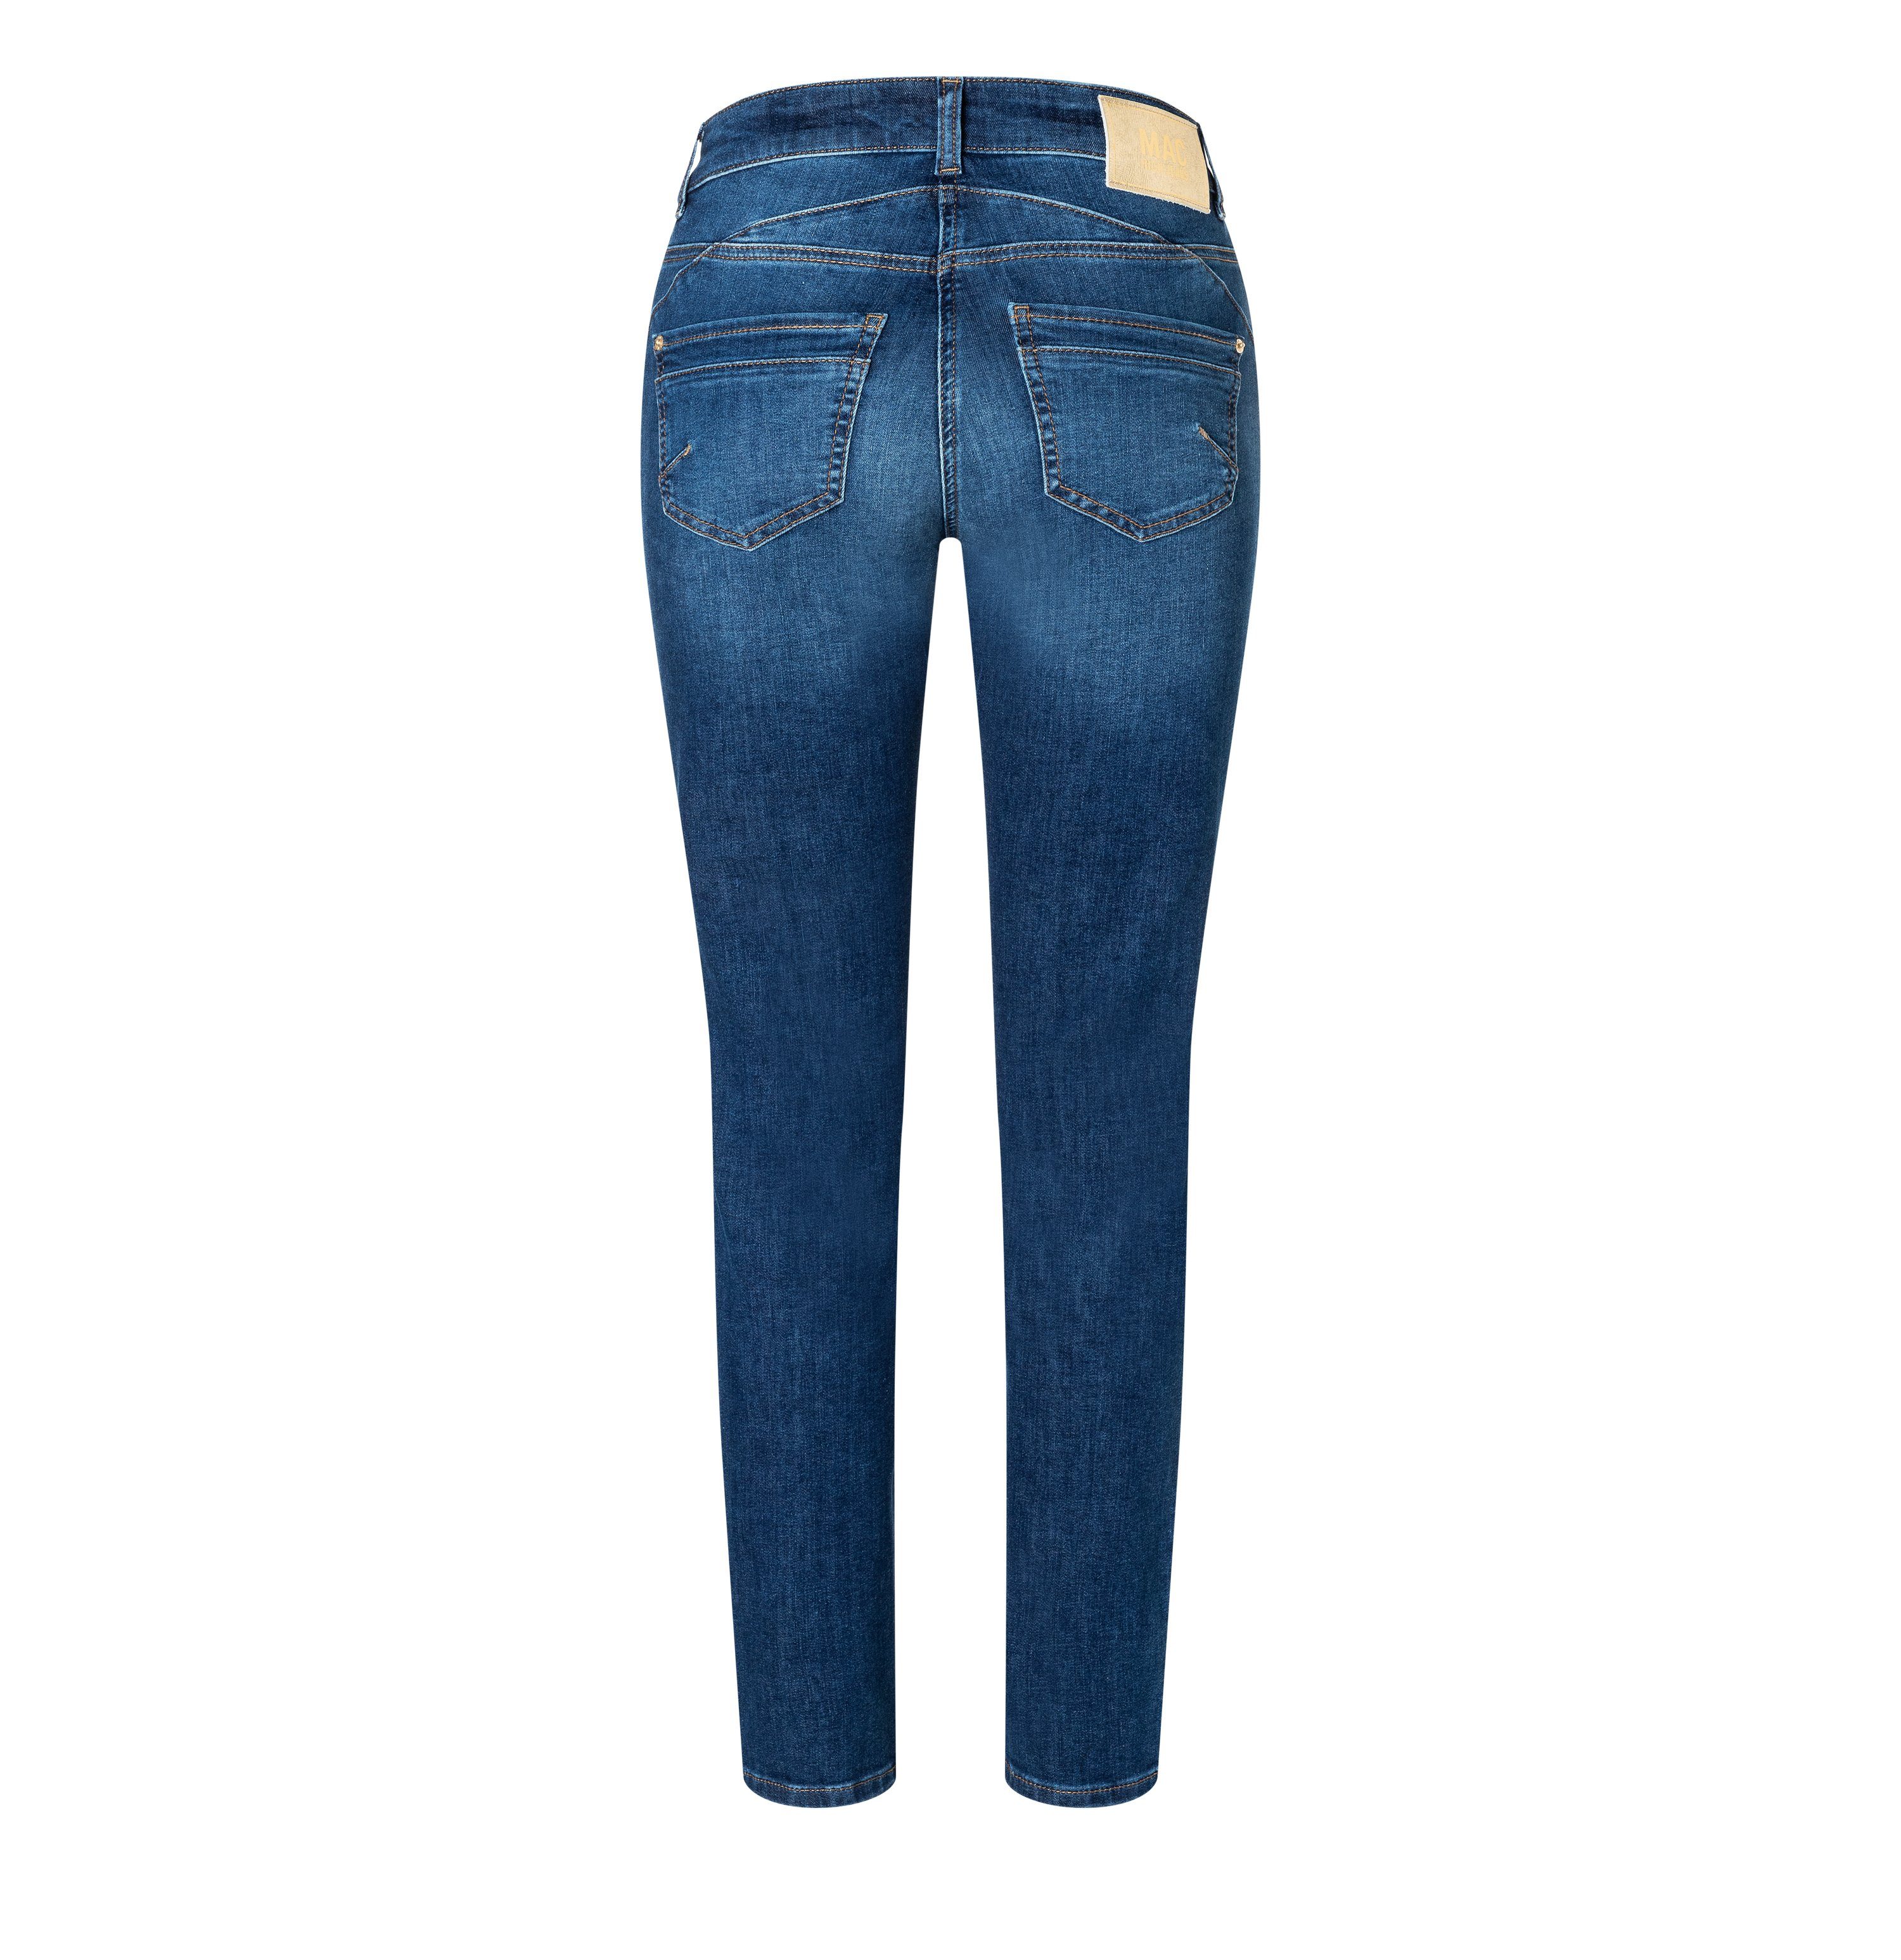 MAC Stretch-Jeans MAC fashion RICH D620 washed blue SLIM 5743-90-0387